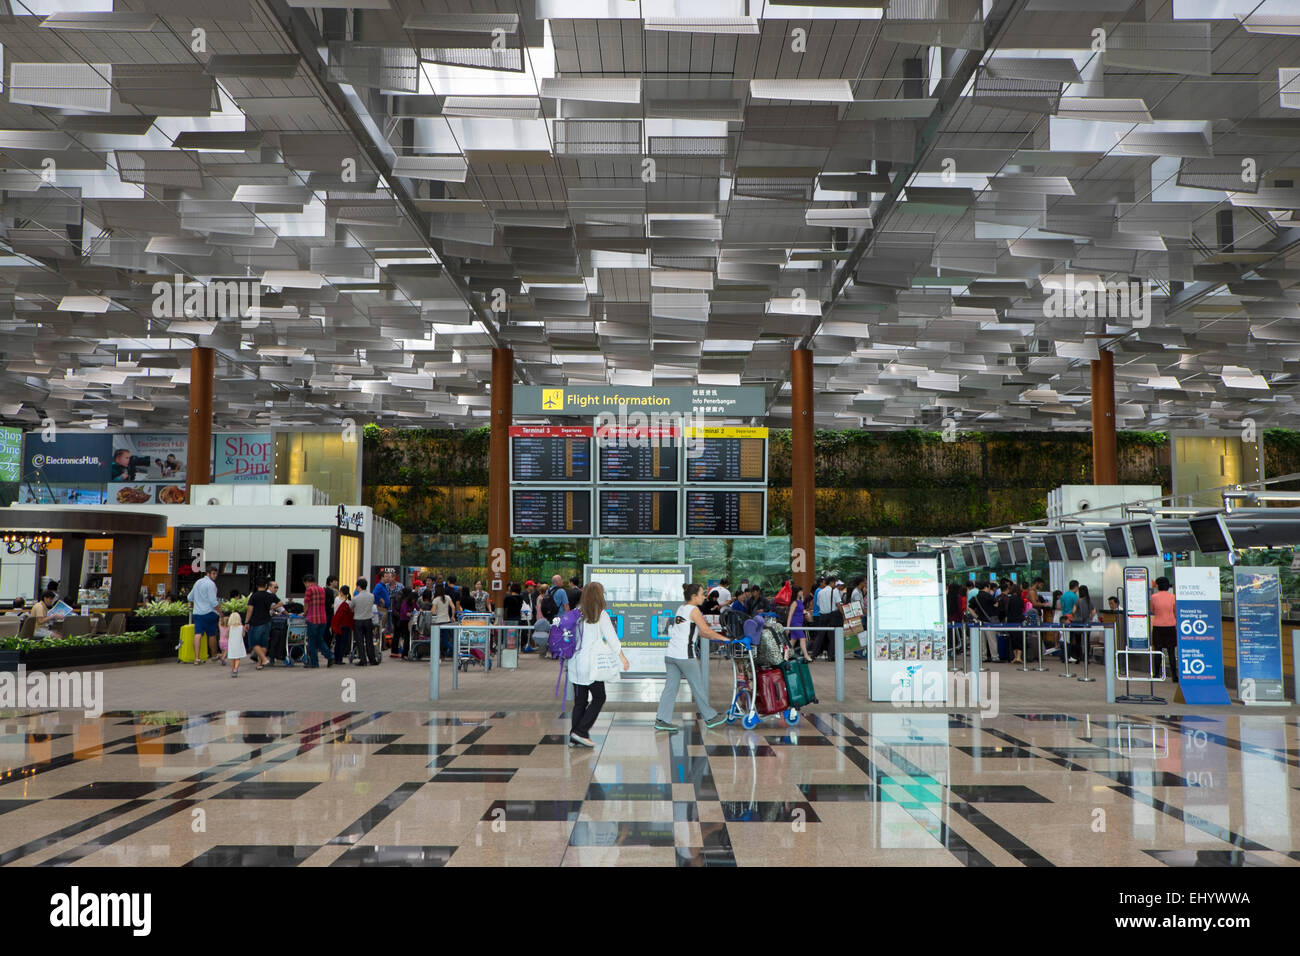 L'aéroport de Changi, Hall de départ, Singapour Banque D'Images